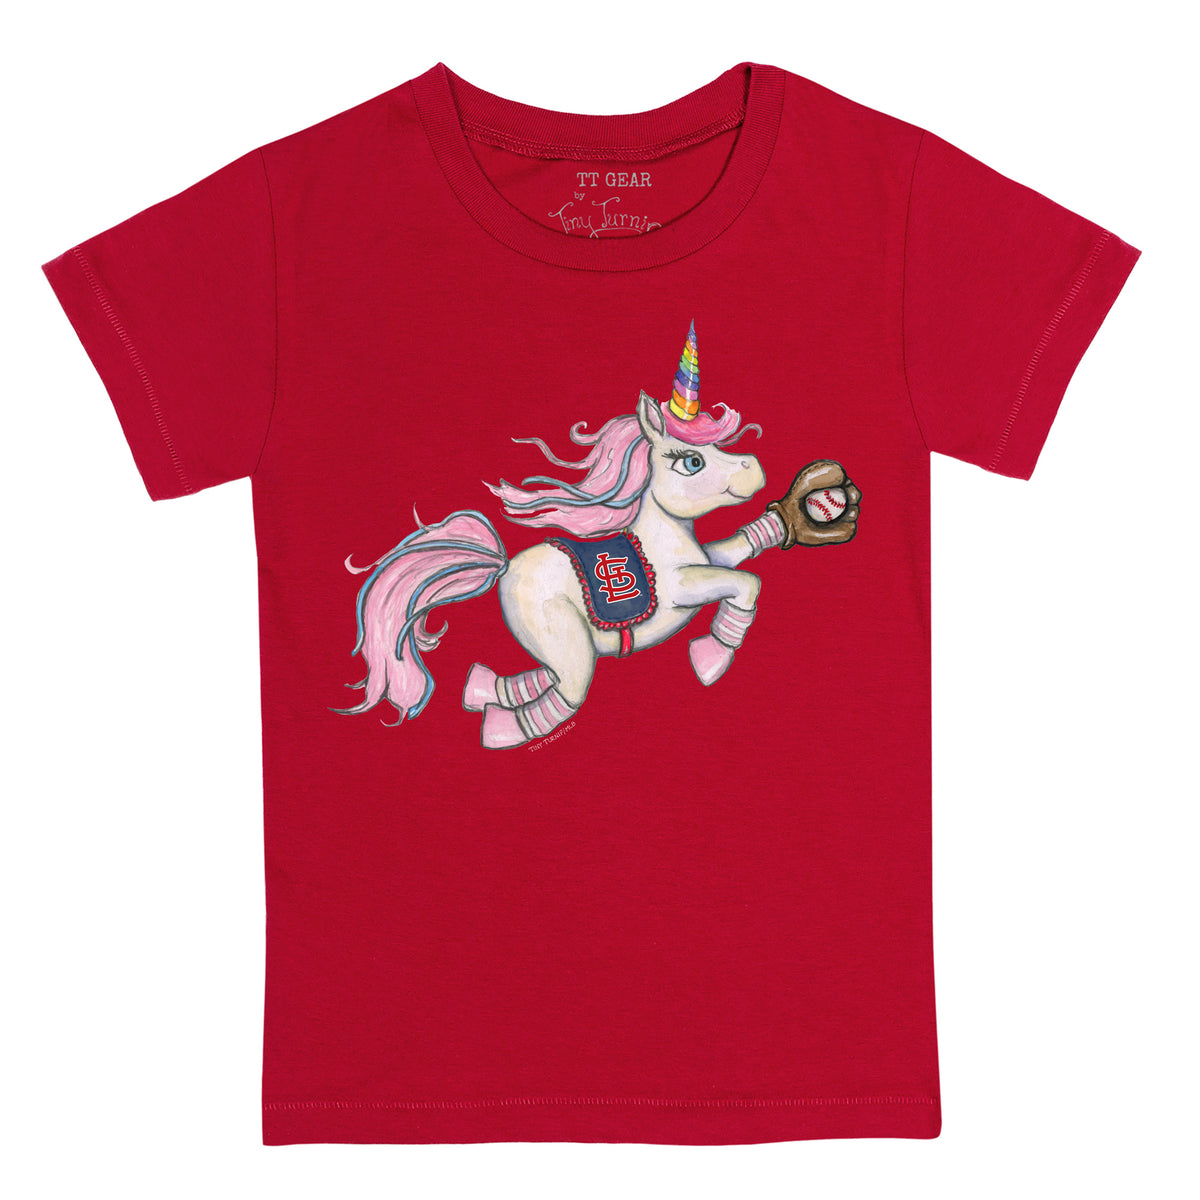 Girls Youth Tiny Turnip White St. Louis Cardinals Unicorn Fringe T-Shirt Size: Medium